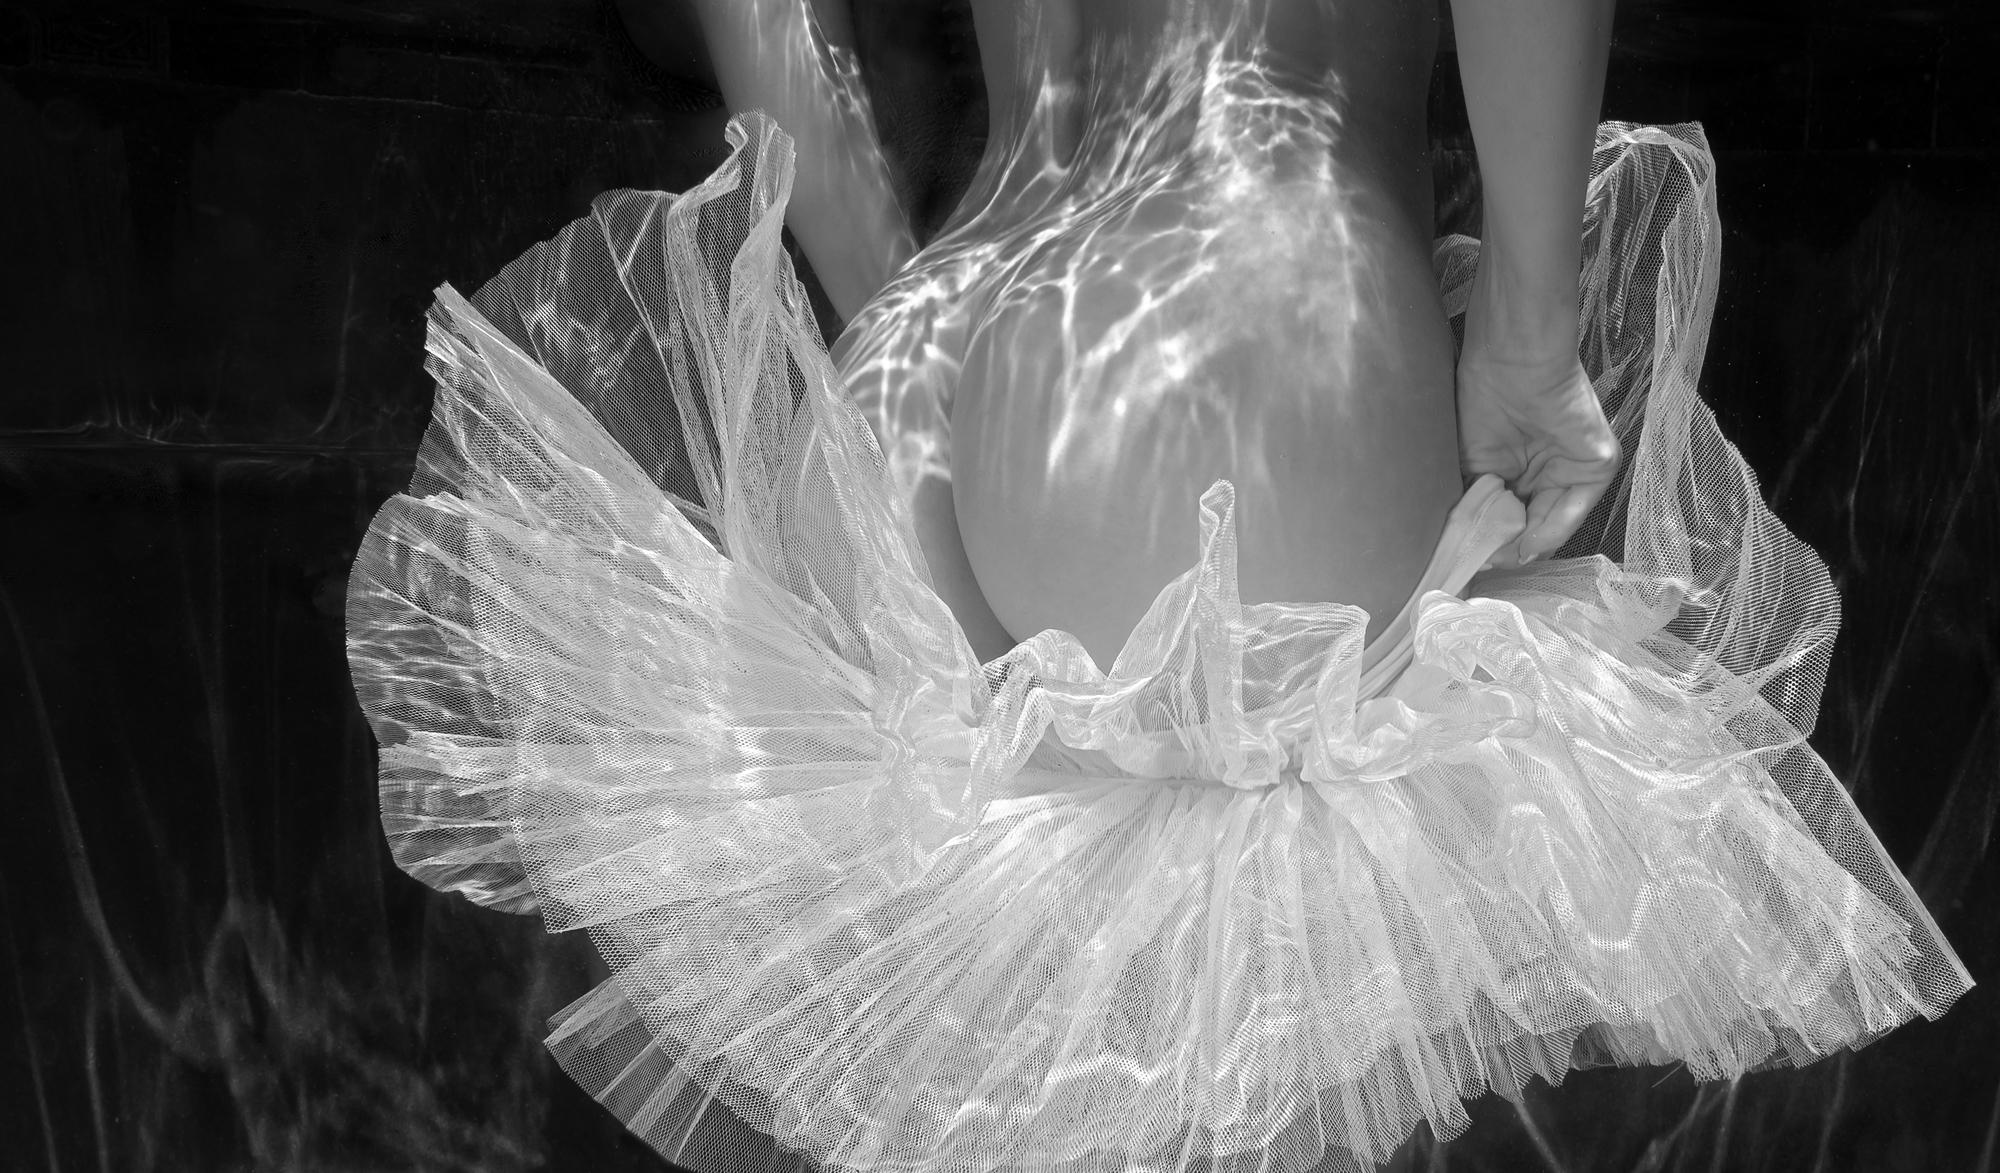 Alex Sher Black and White Photograph - Tutu Skirt